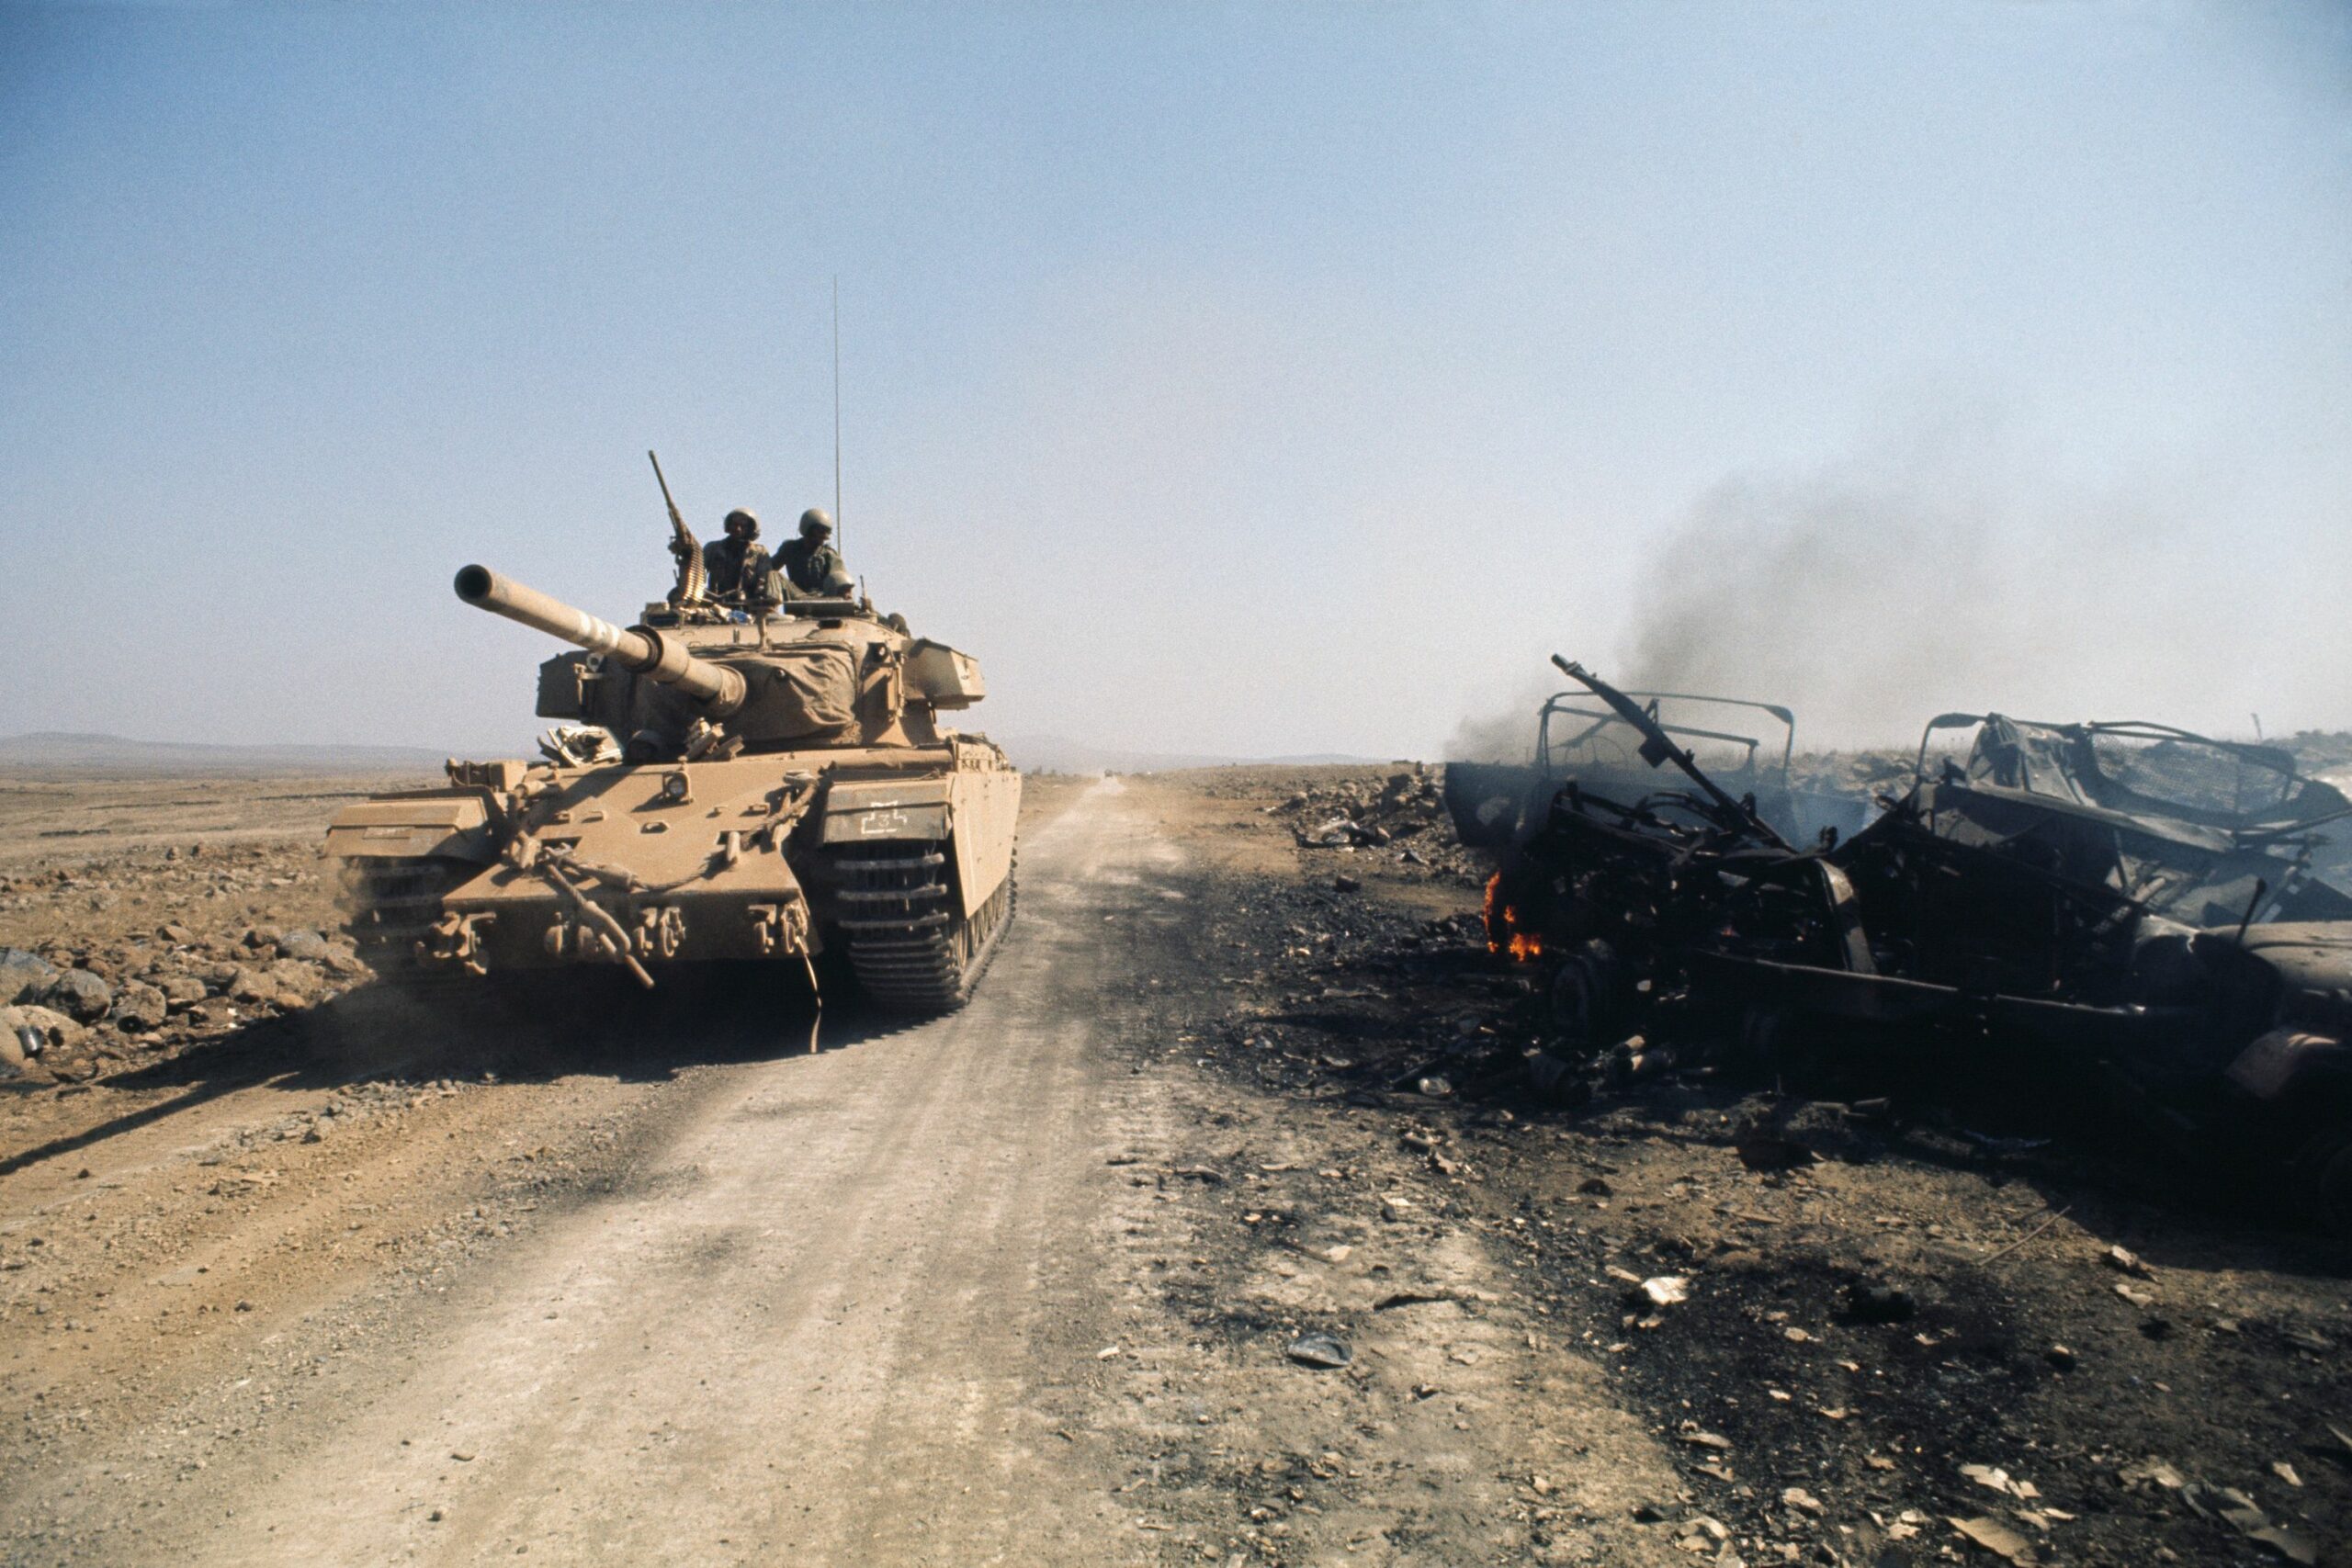 guerra-de-yom-kippur-historia-hoy